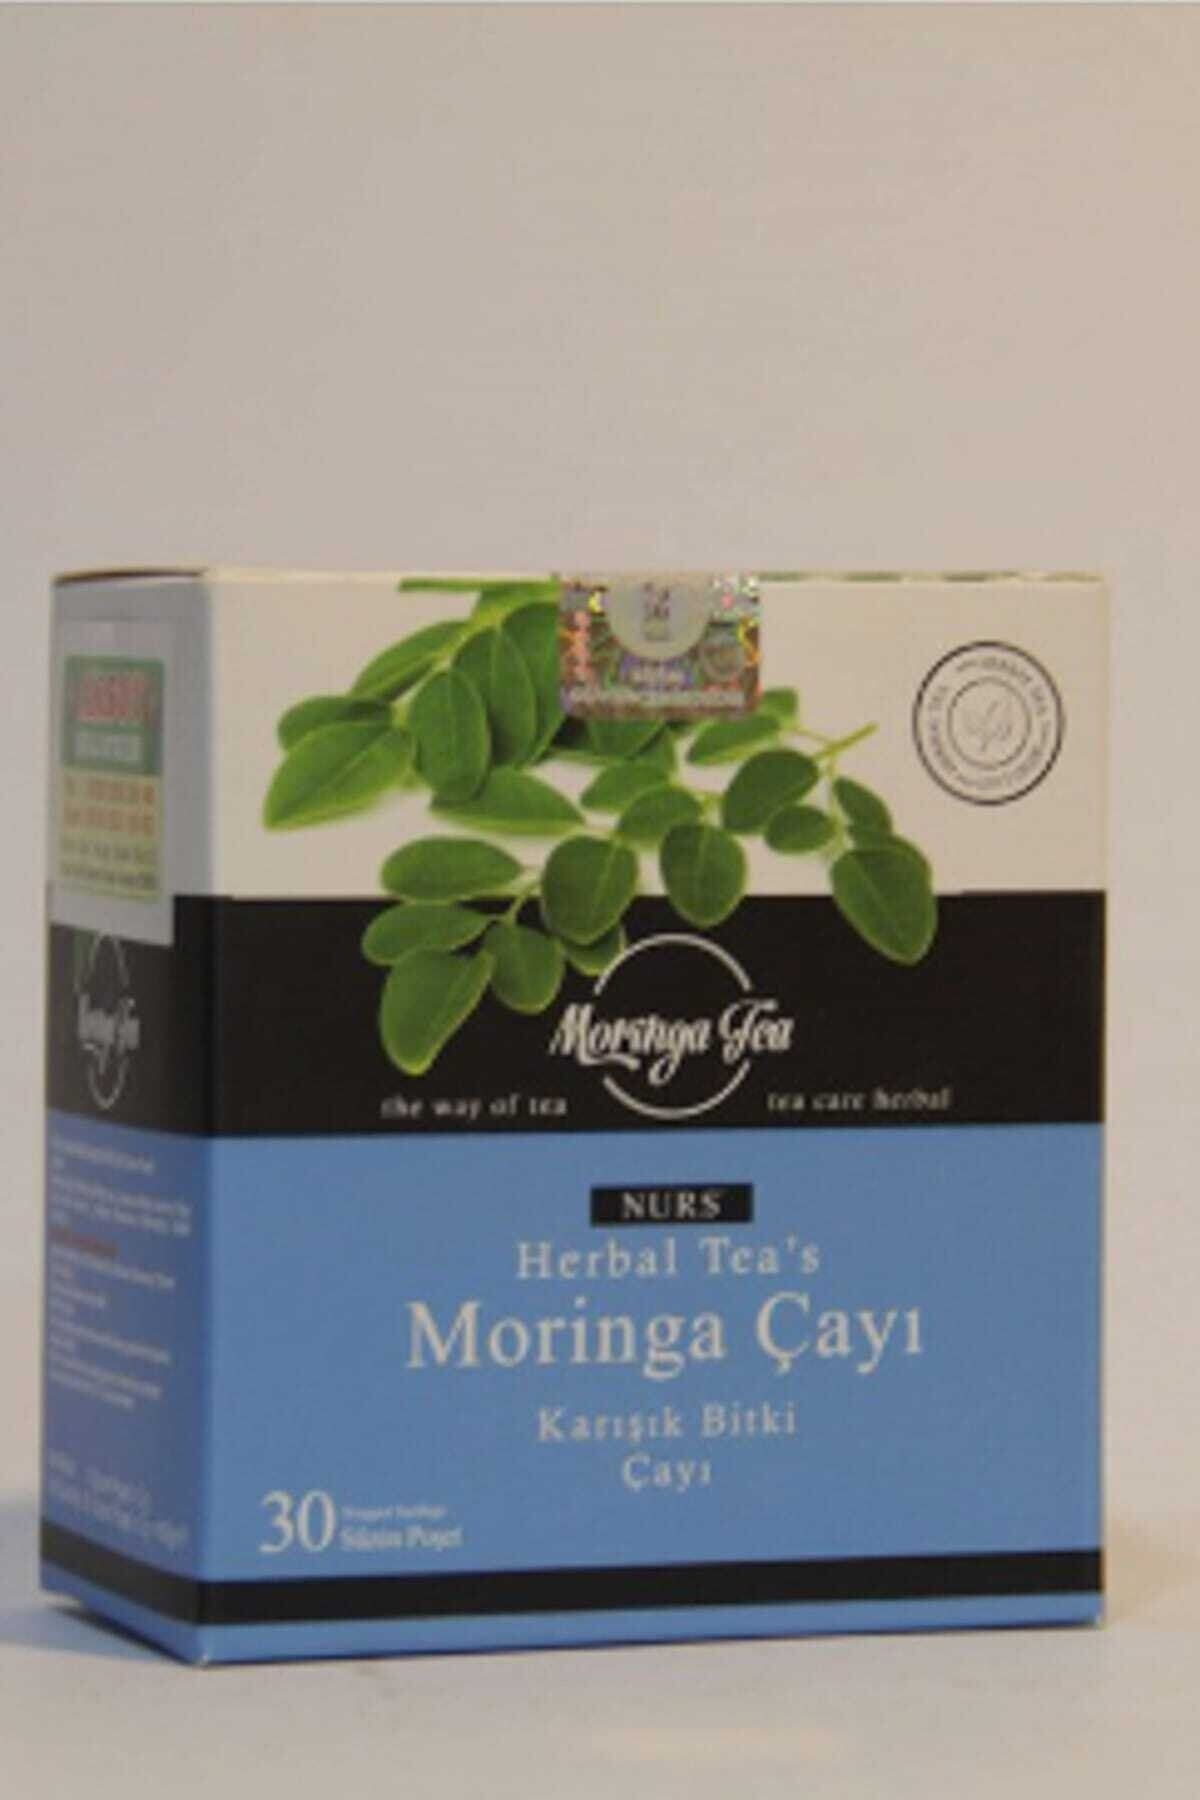 Nurs Herbal Tea's Moringa Çayı 30 Süzen Poşet